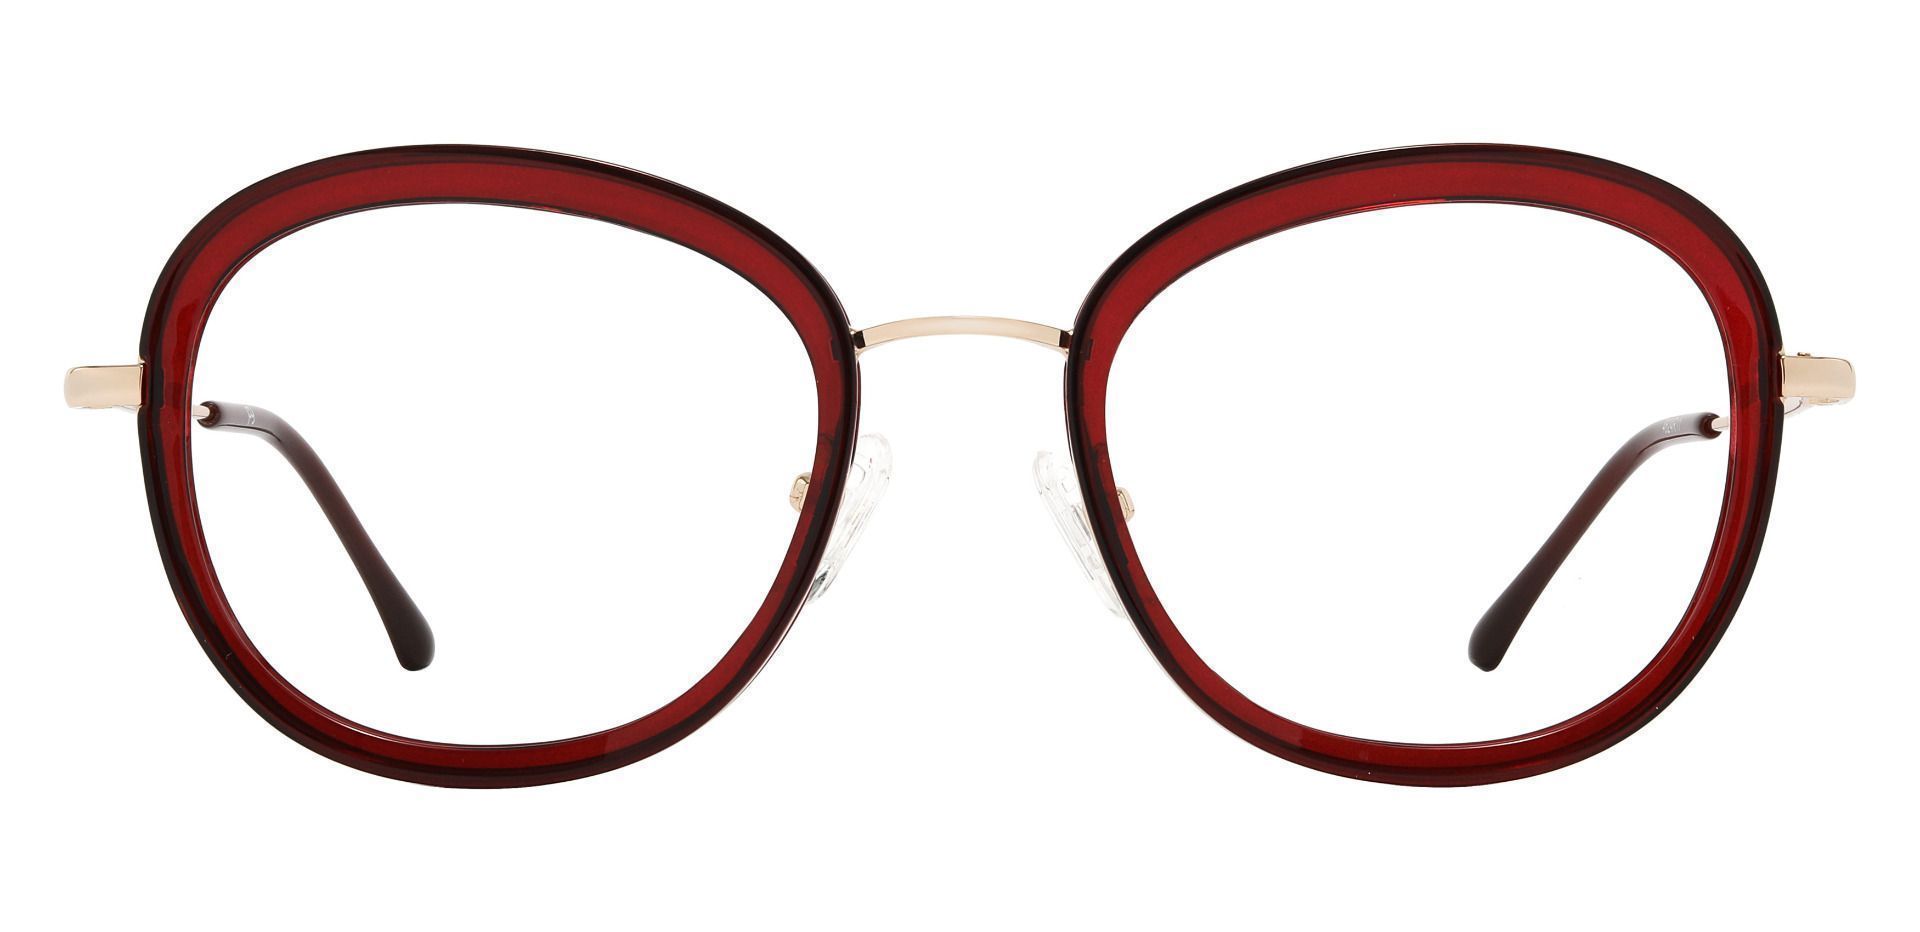 Bourbon Oval Prescription Glasses - Red